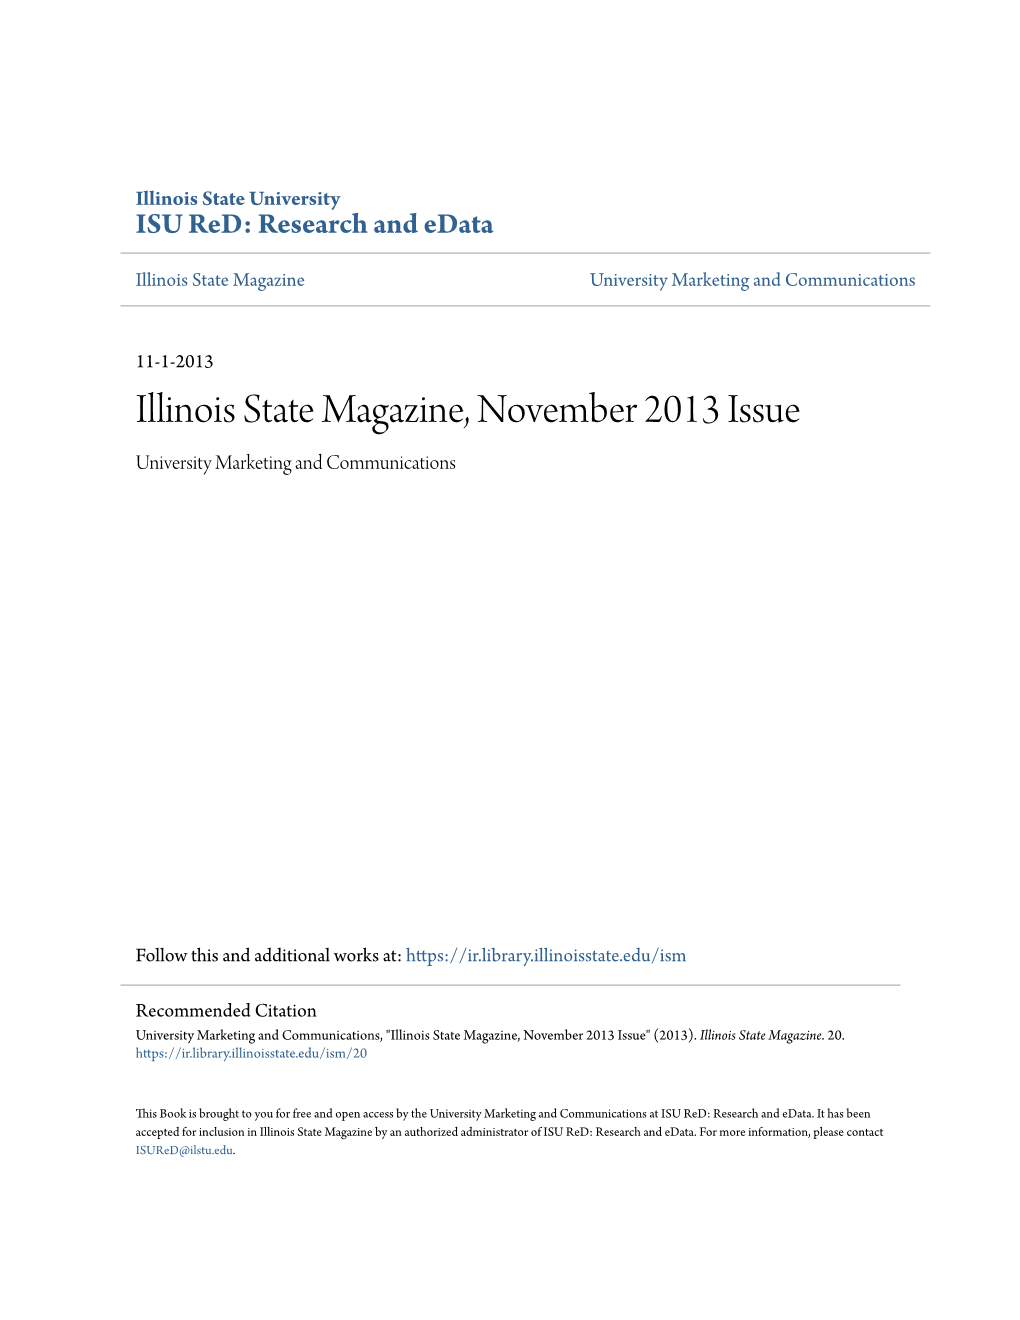 Illinois State Magazine, November 2013 Issue University Marketing and Communications